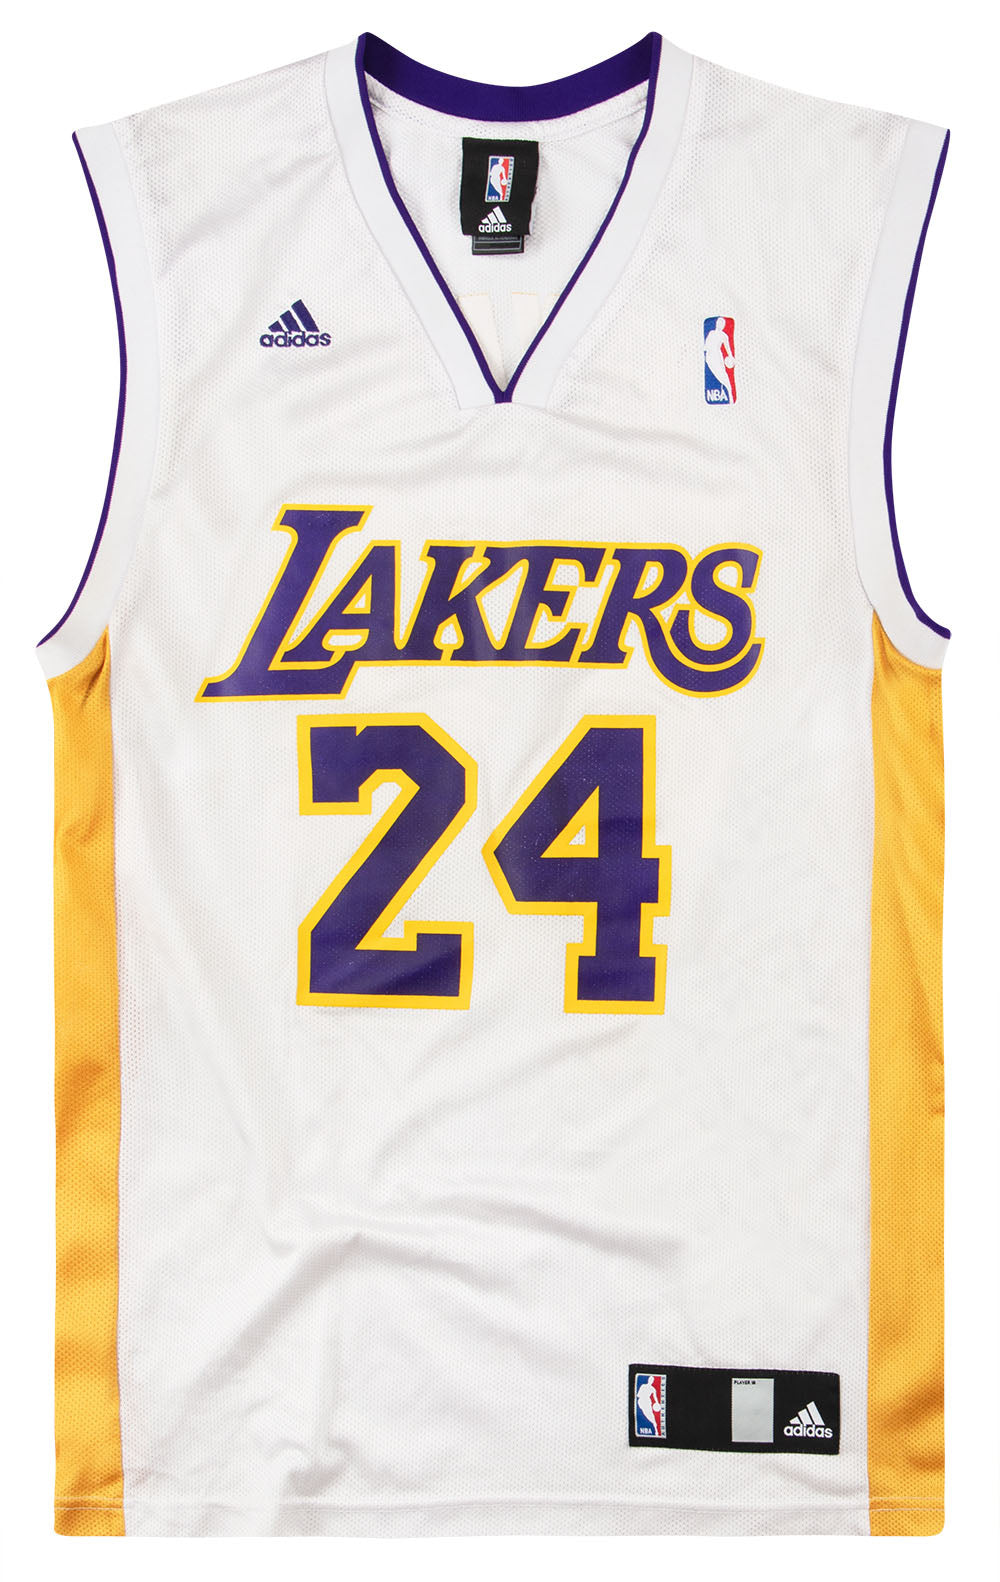 adidas, Shirts, Adidas La Lakers T Shirt Basketball Nba